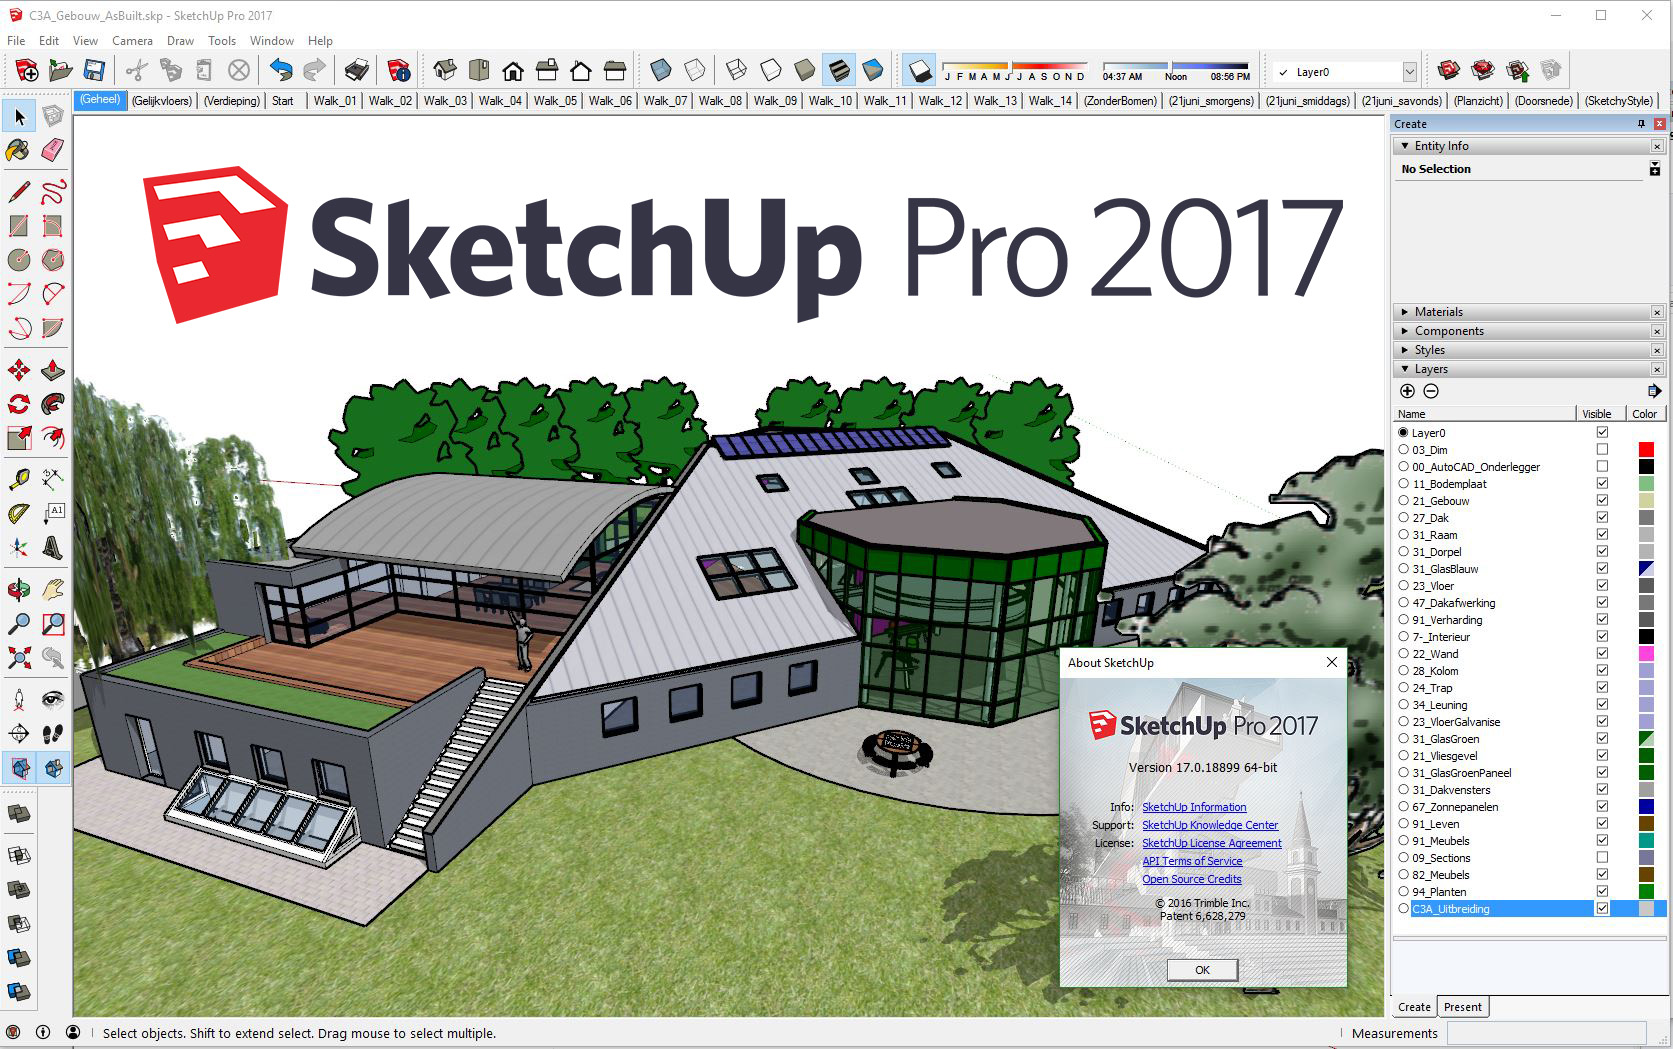 download sketchup pro 2017 crack 32 bit